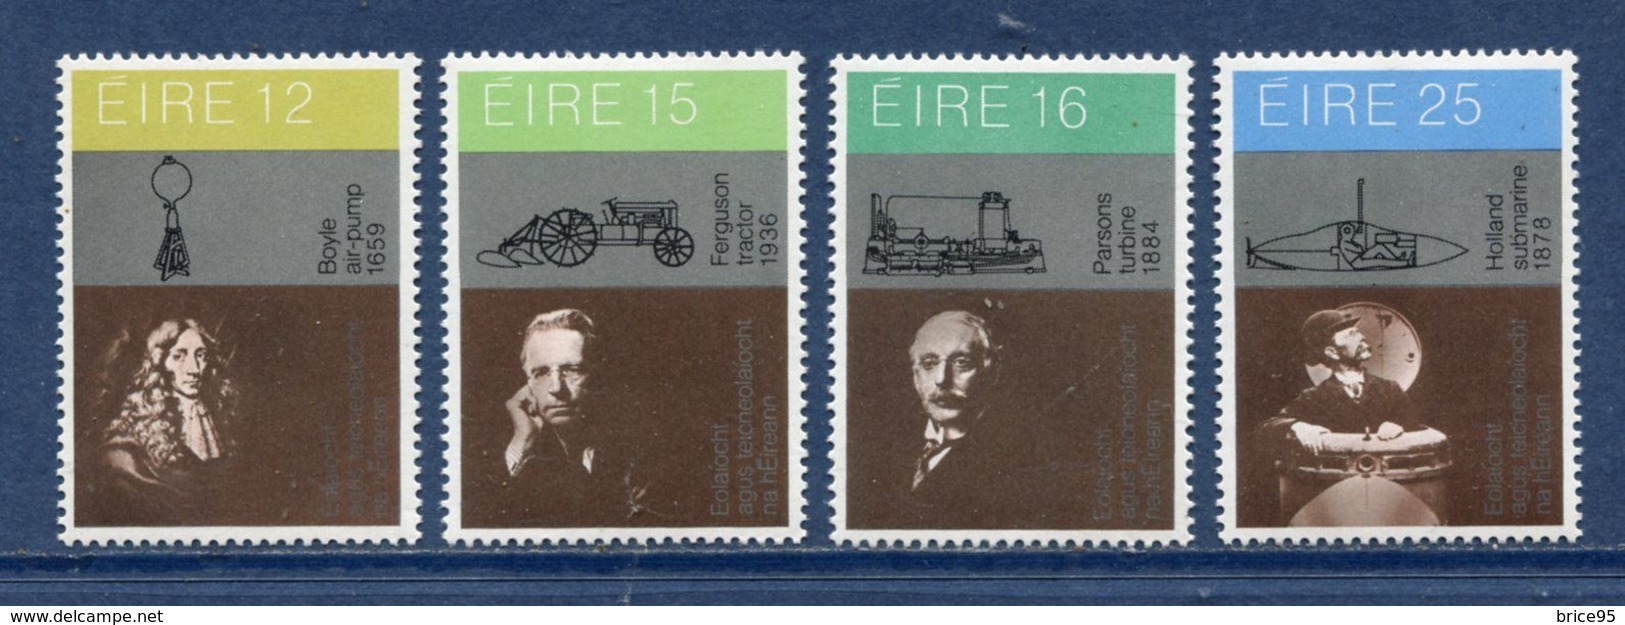 Irlande - YT N° 436 à 439 - Neuf Sans Charnière - 1981 - Nuovi